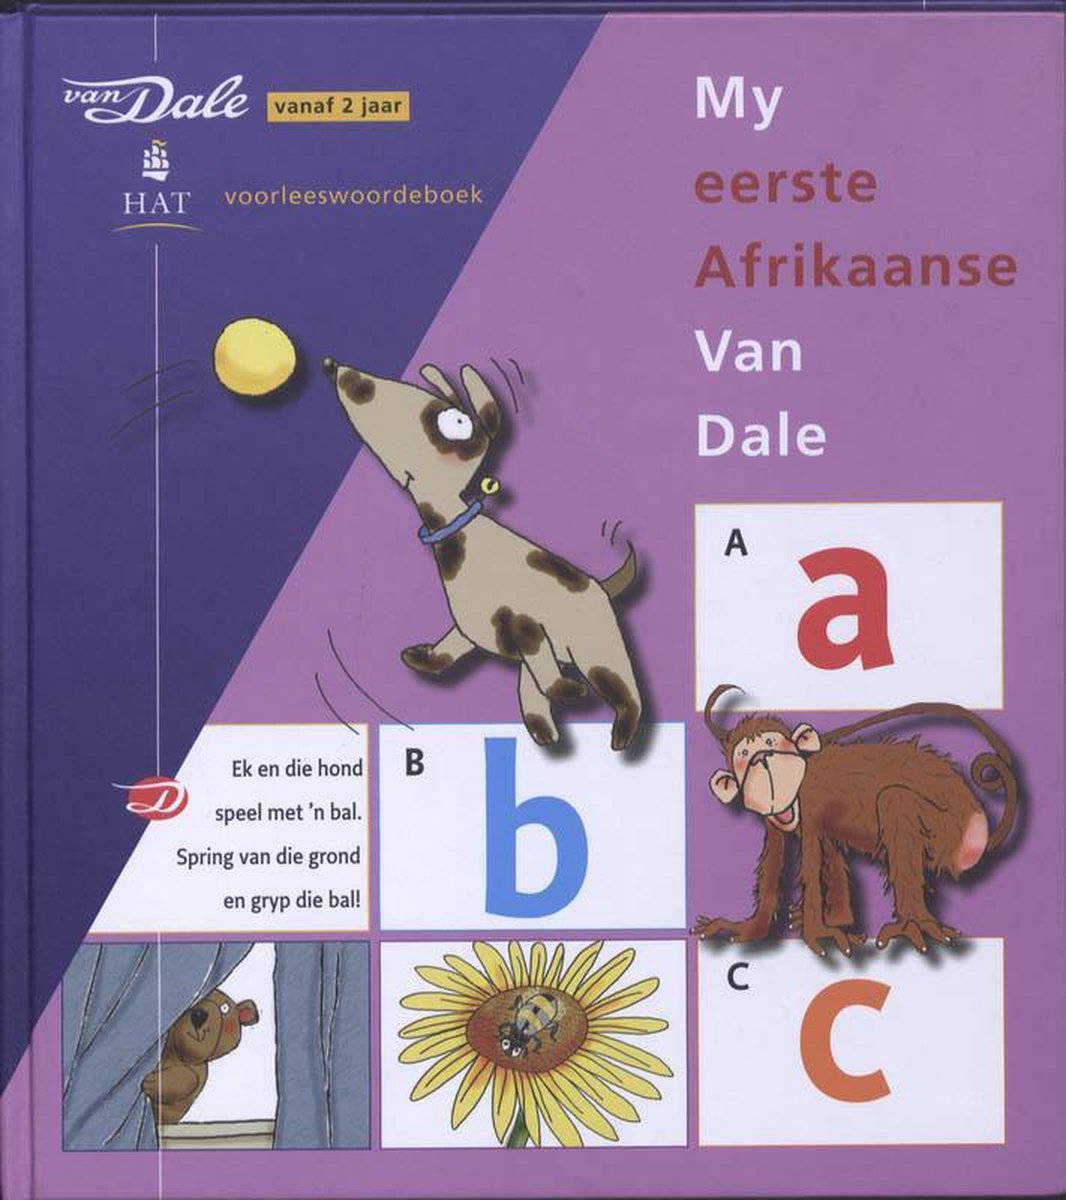 My Eerste Afrikaanse Van Dale